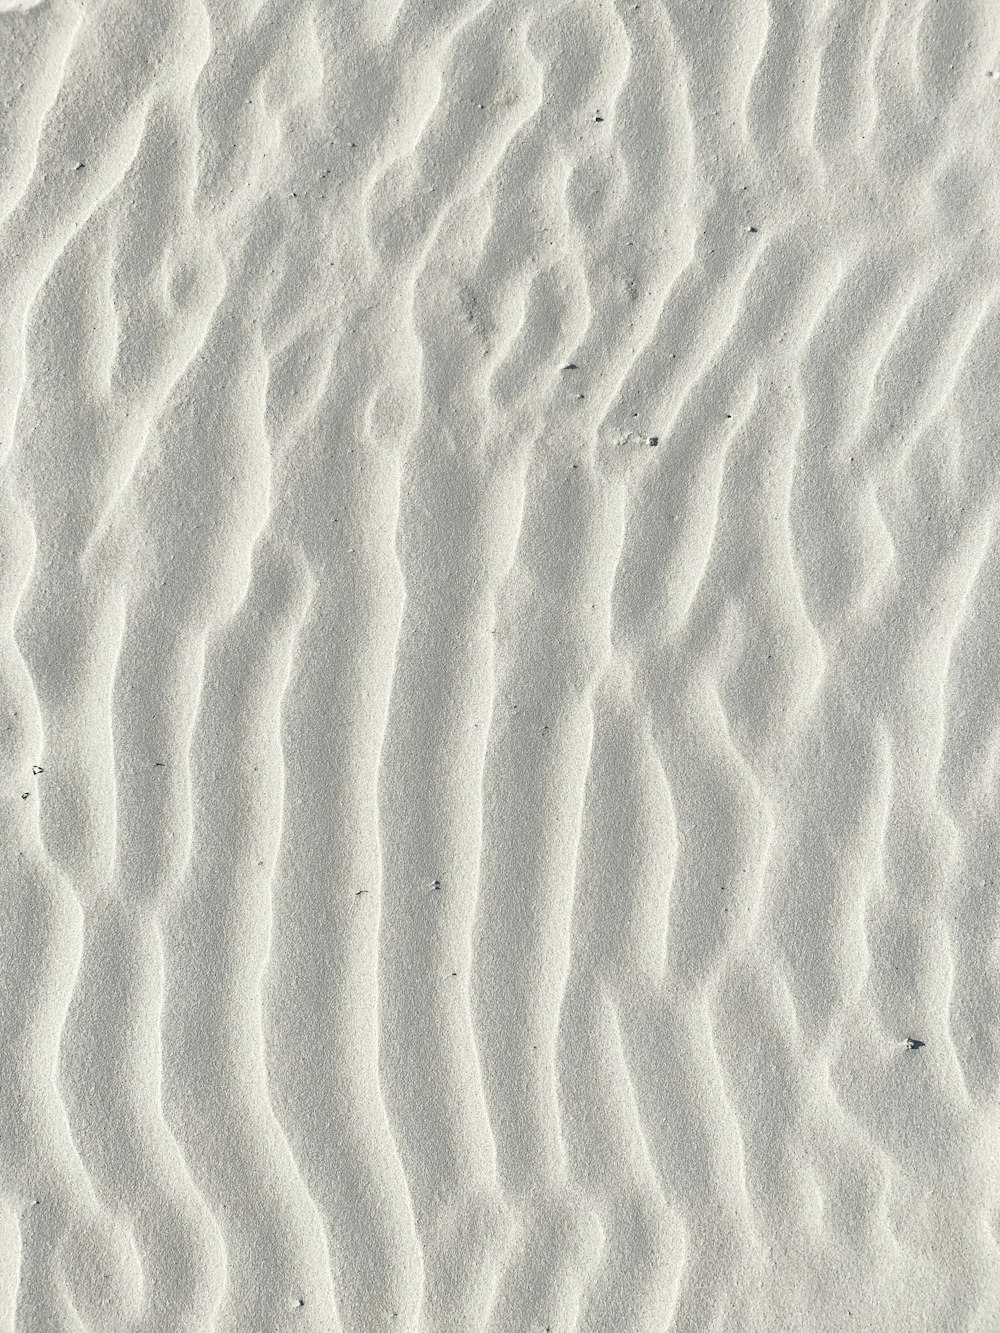 fotografia macro de areia branca